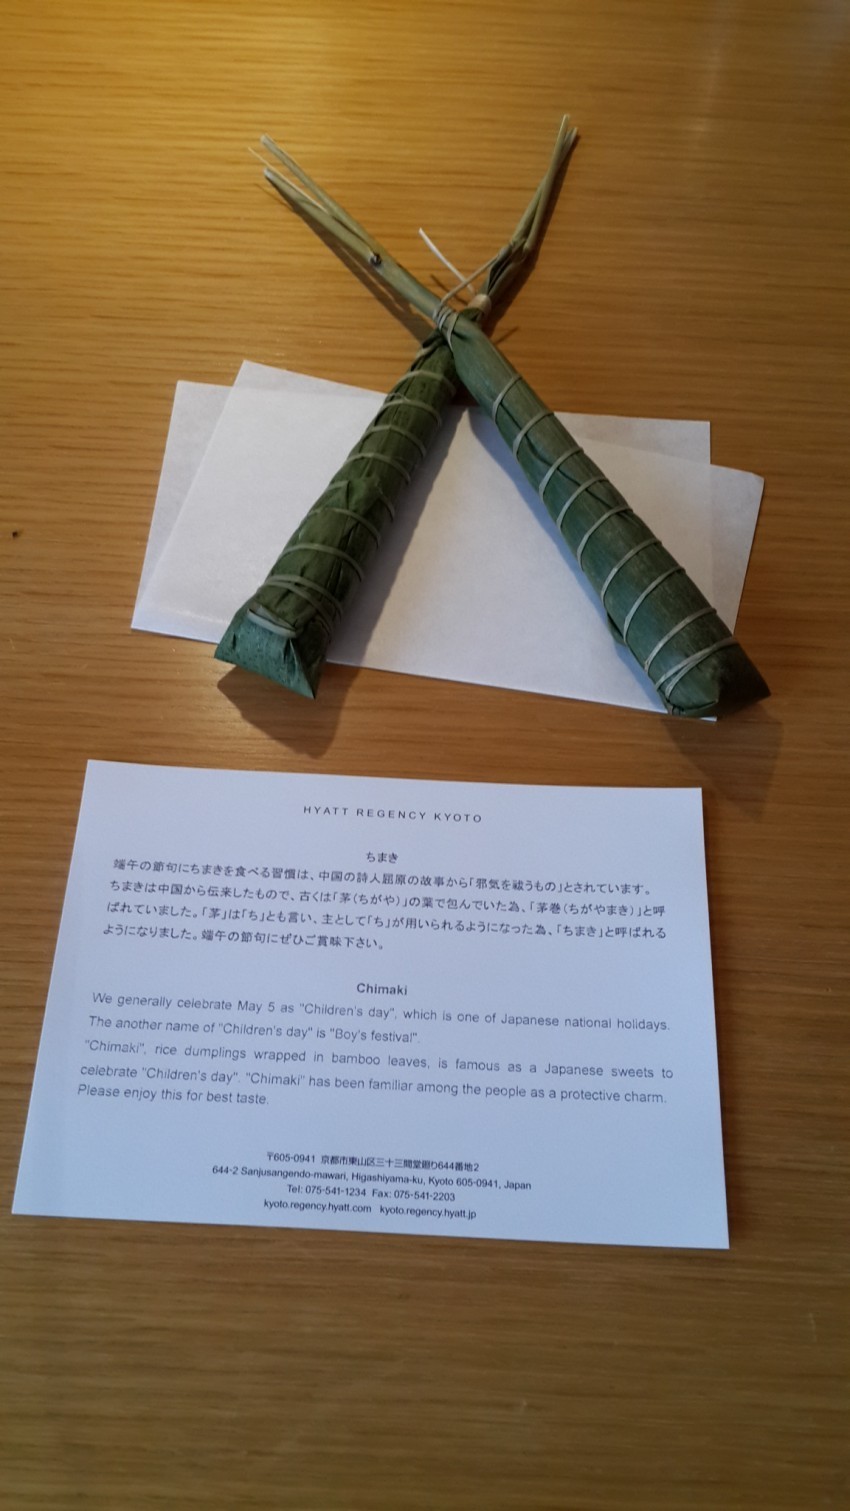 酒店送的粽子，旁边的纸条上的日文讲到了中国的诗人屈原。英文的讲解却是说5月5号是日本的“儿童节”，说吃粽子是日本儿童节的习惯。